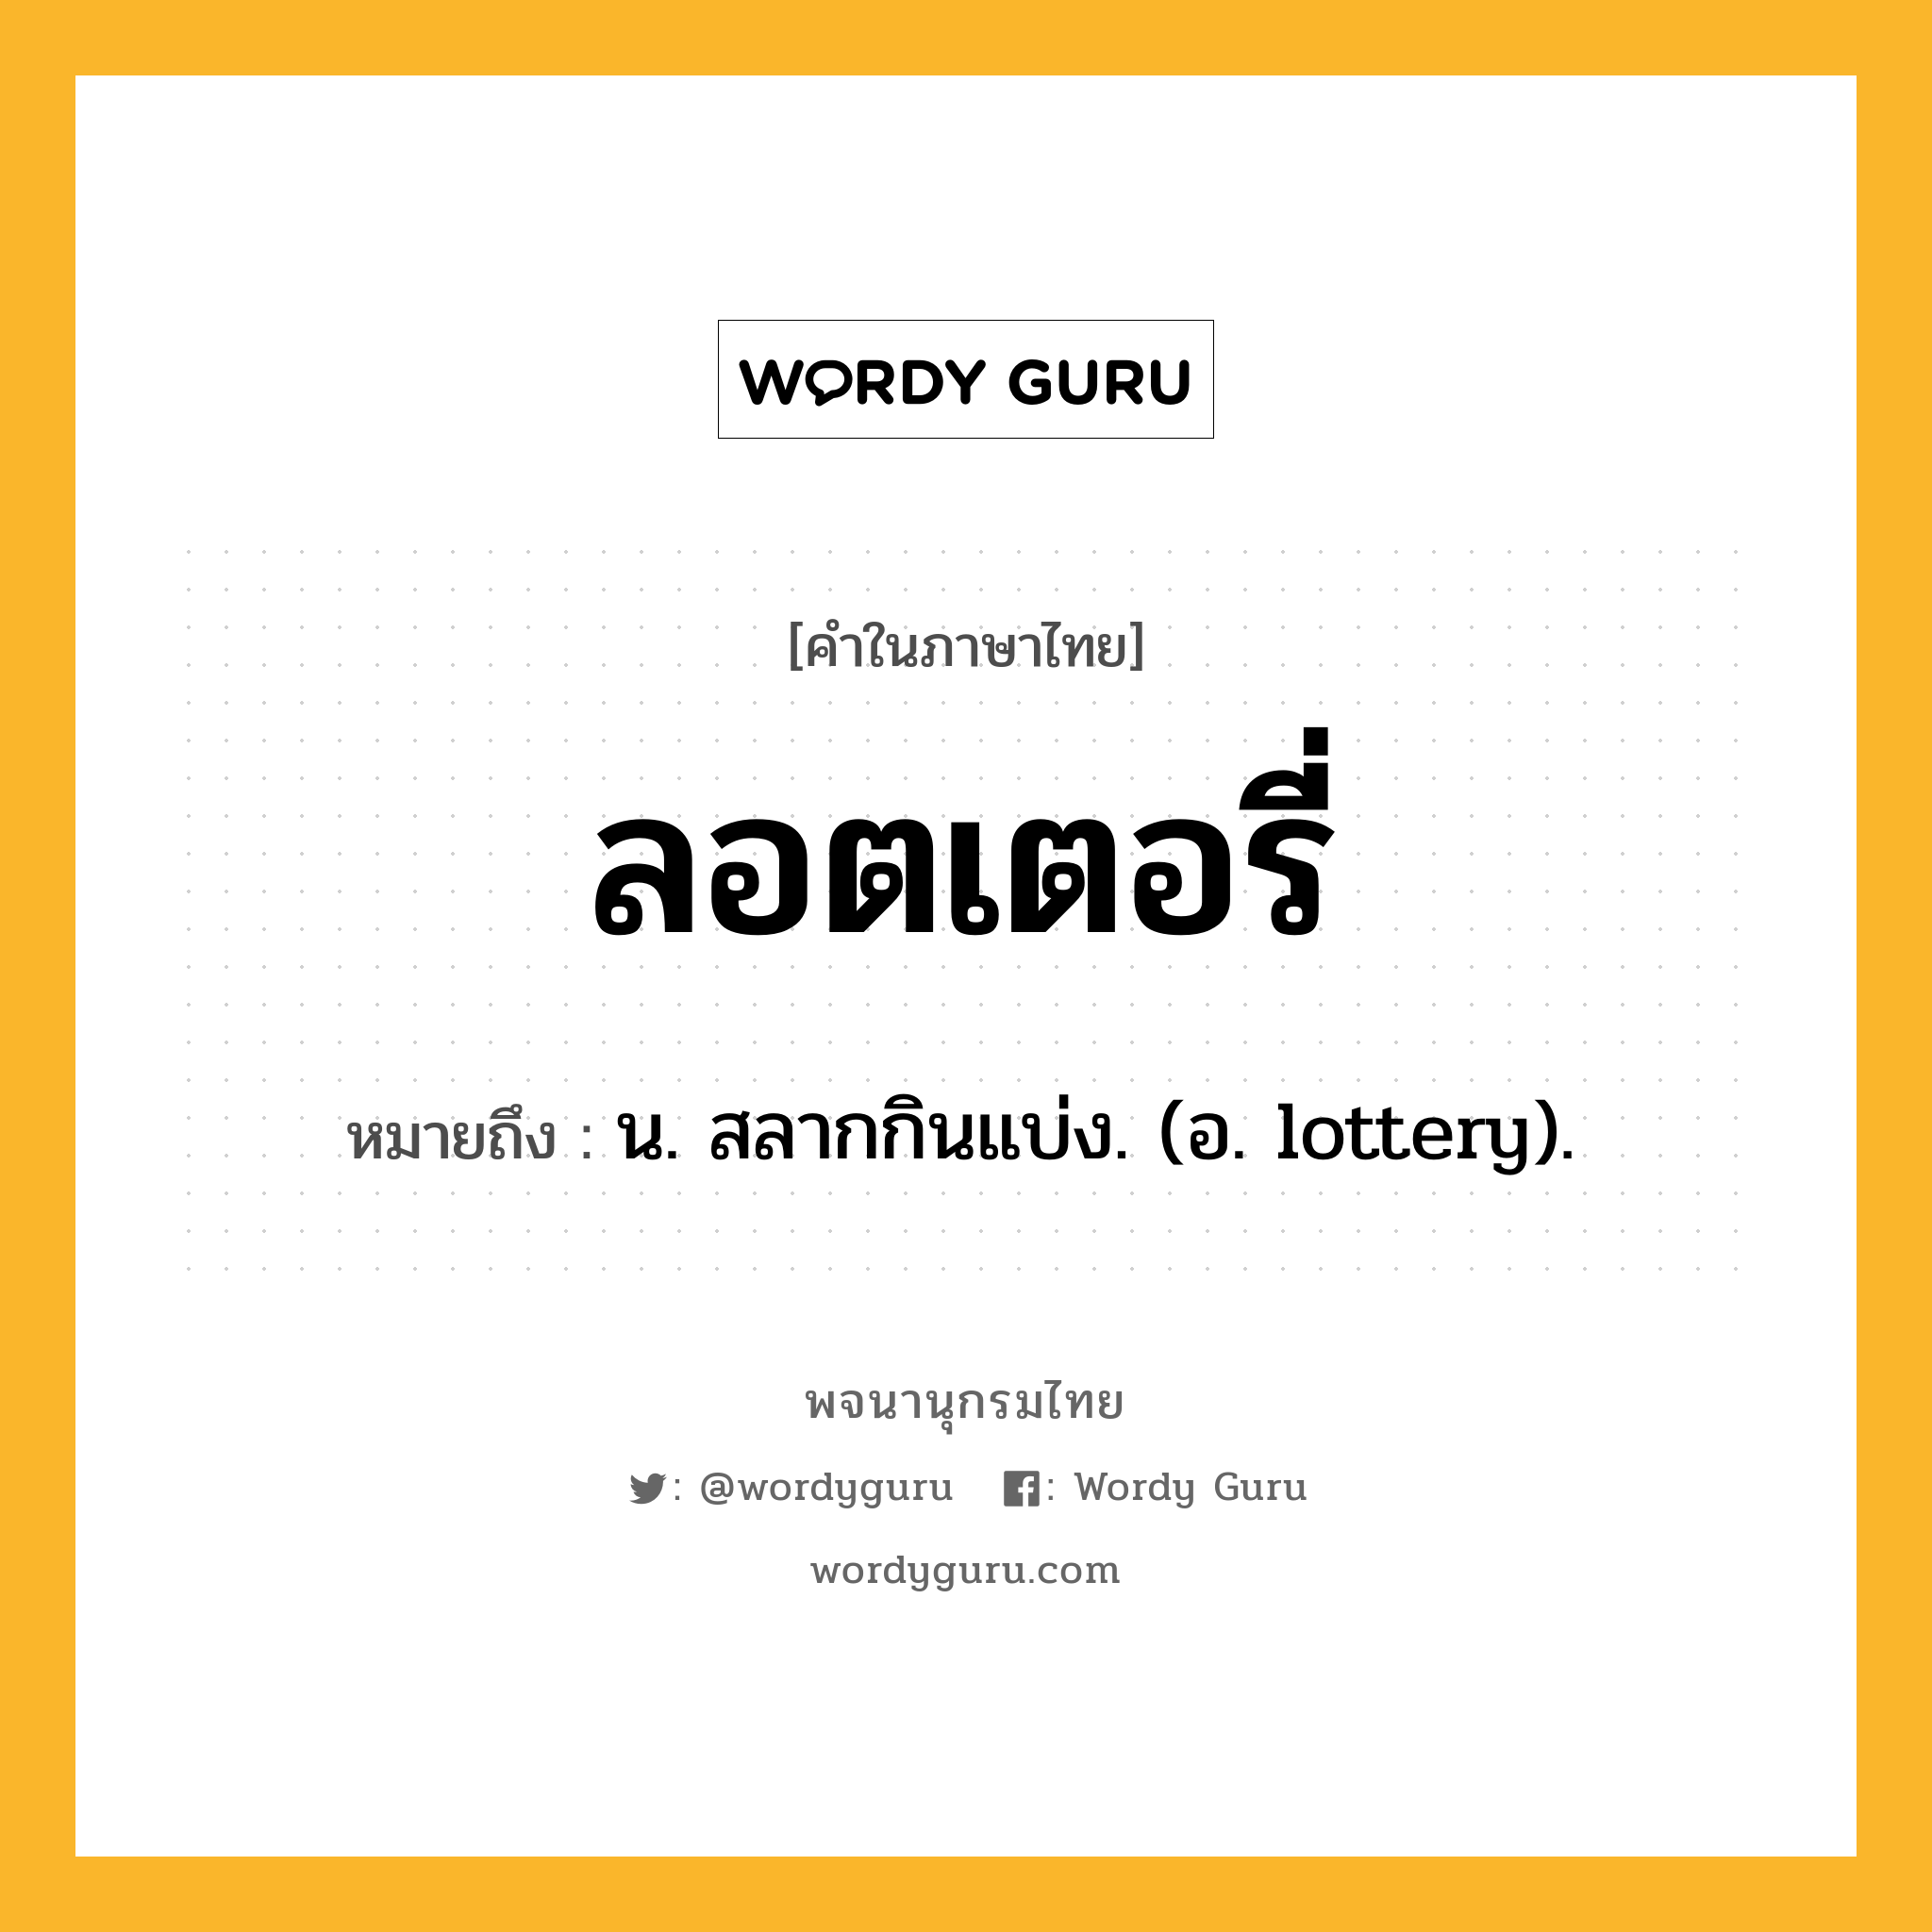 ลอตเตอรี่ หมายถึงอะไร?, คำในภาษาไทย ลอตเตอรี่ หมายถึง น. สลากกินแบ่ง. (อ. lottery).